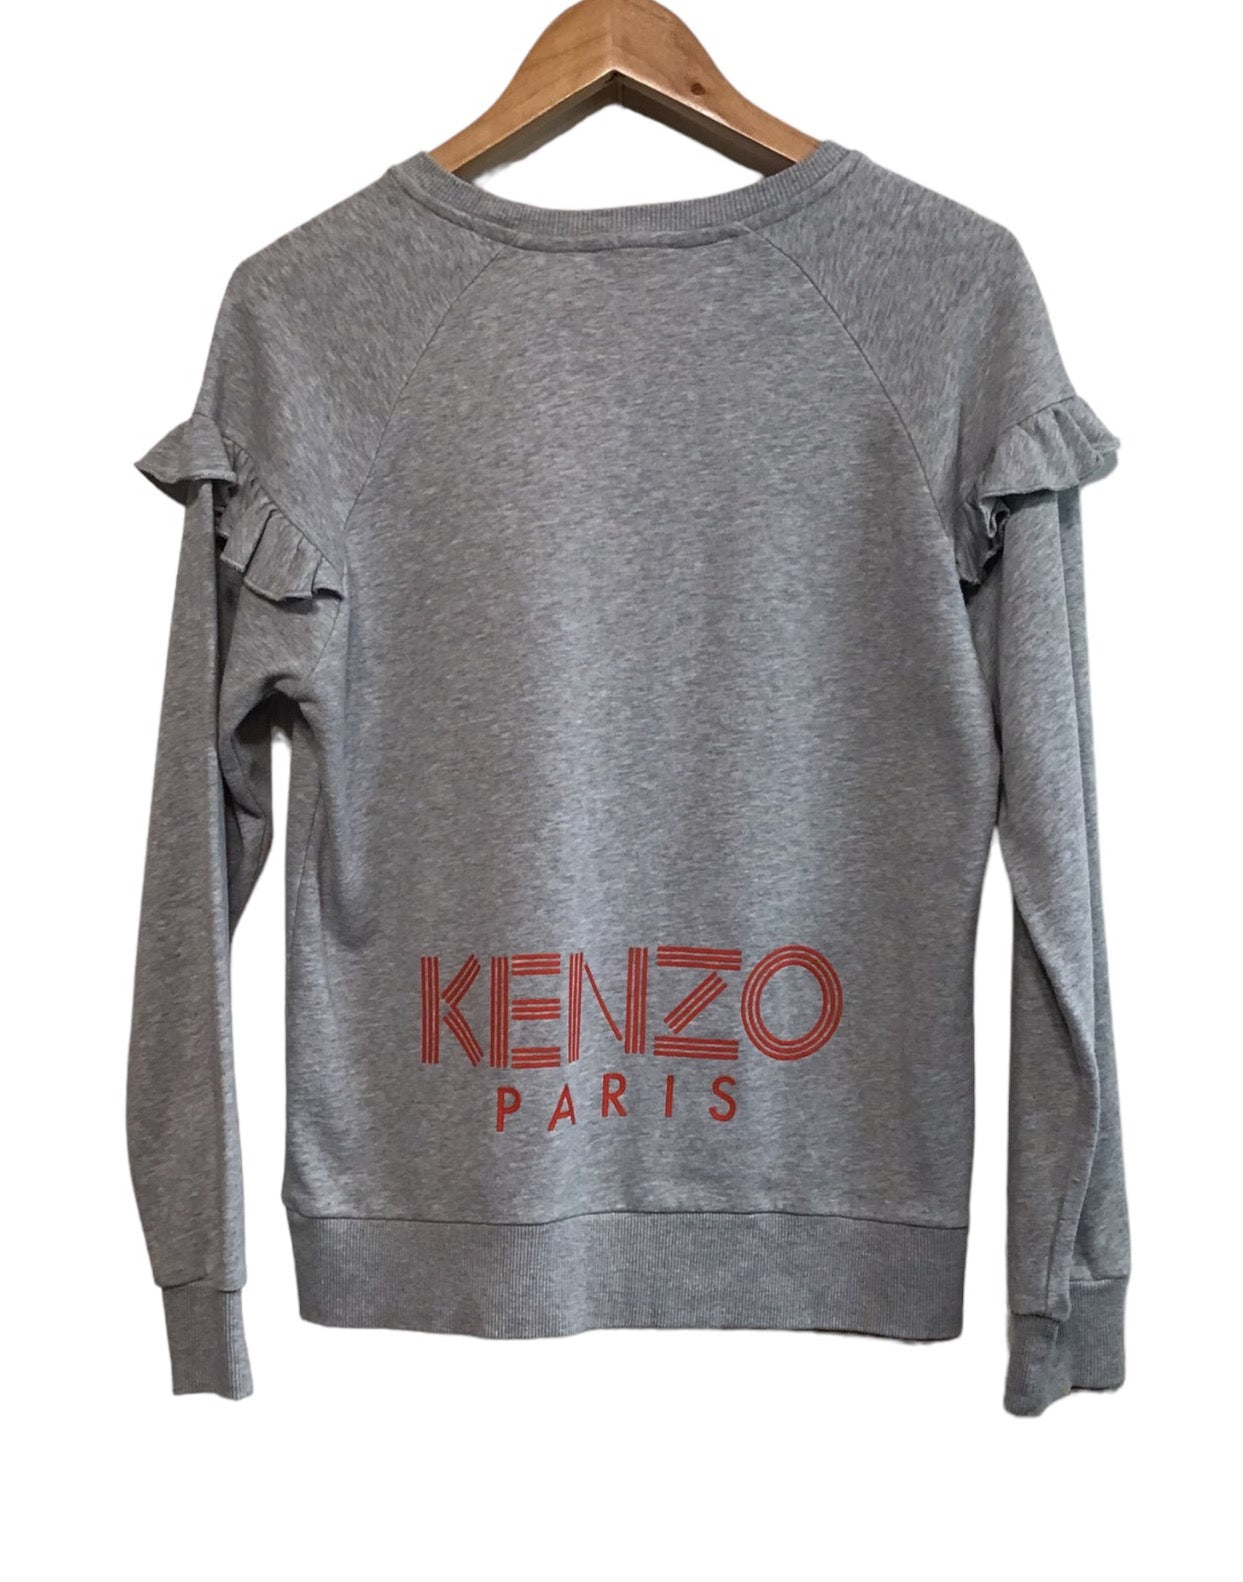 Kenzo Grey Sweatshirt (Size XS)